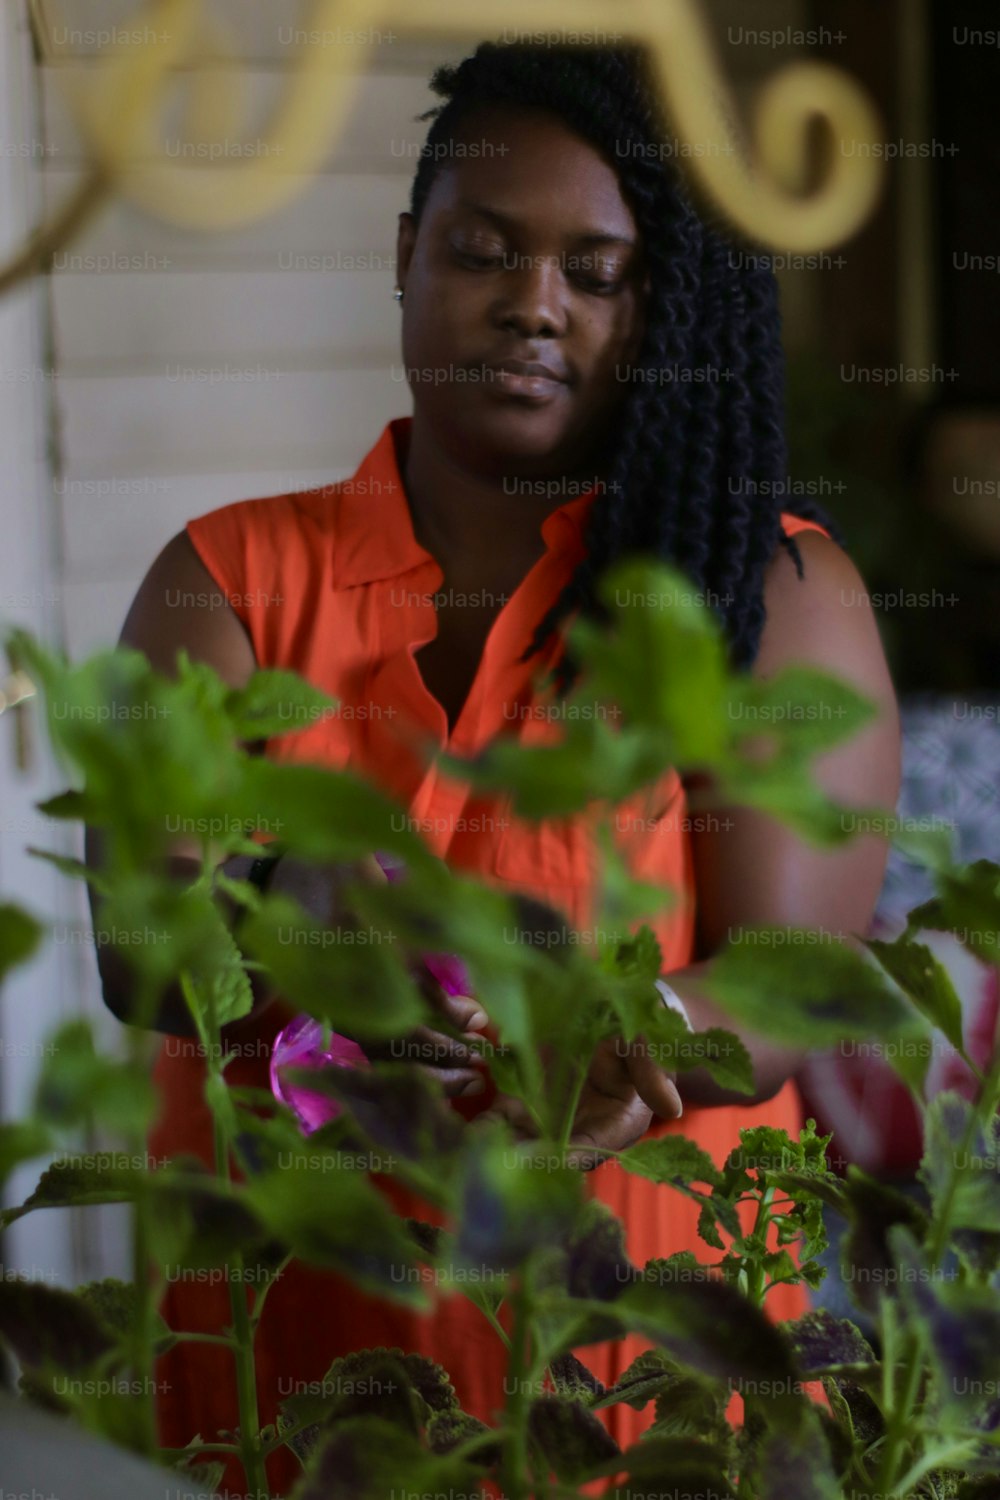 Una mujer con una camisa naranja está mirando una planta